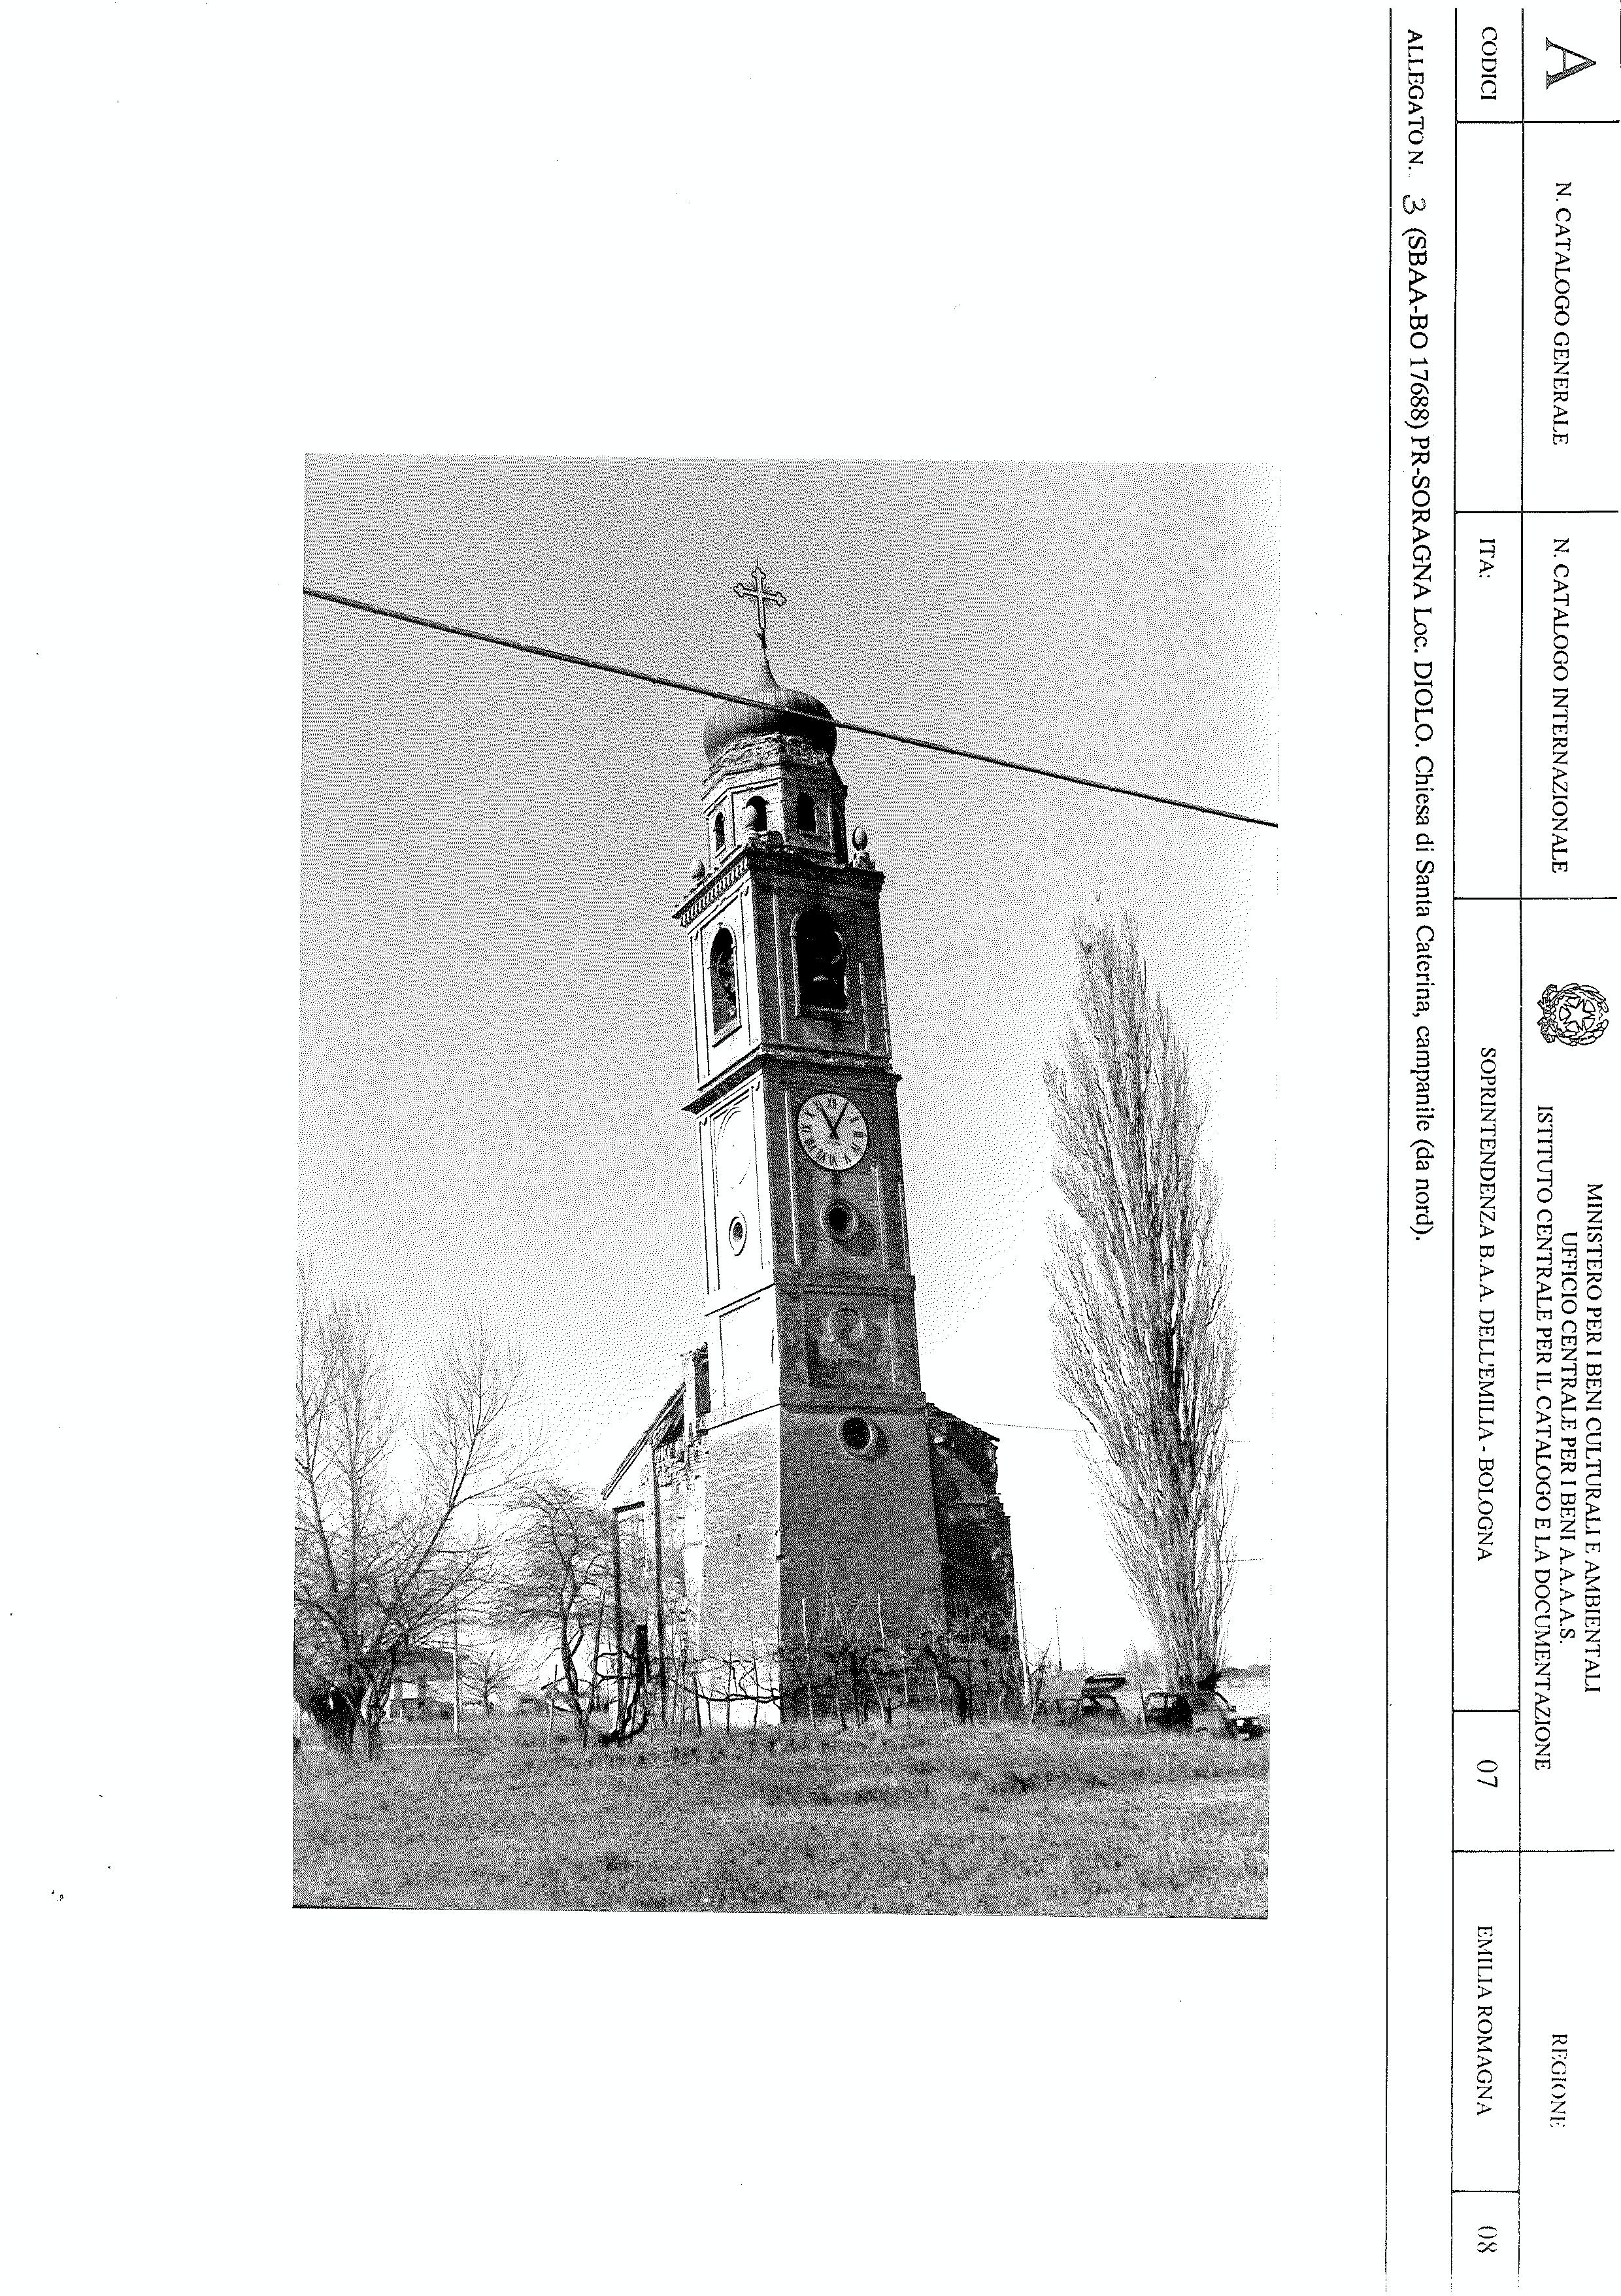 Campanile di S. Caterina Vergine e Martire (campanile) - Soragna (PR) 